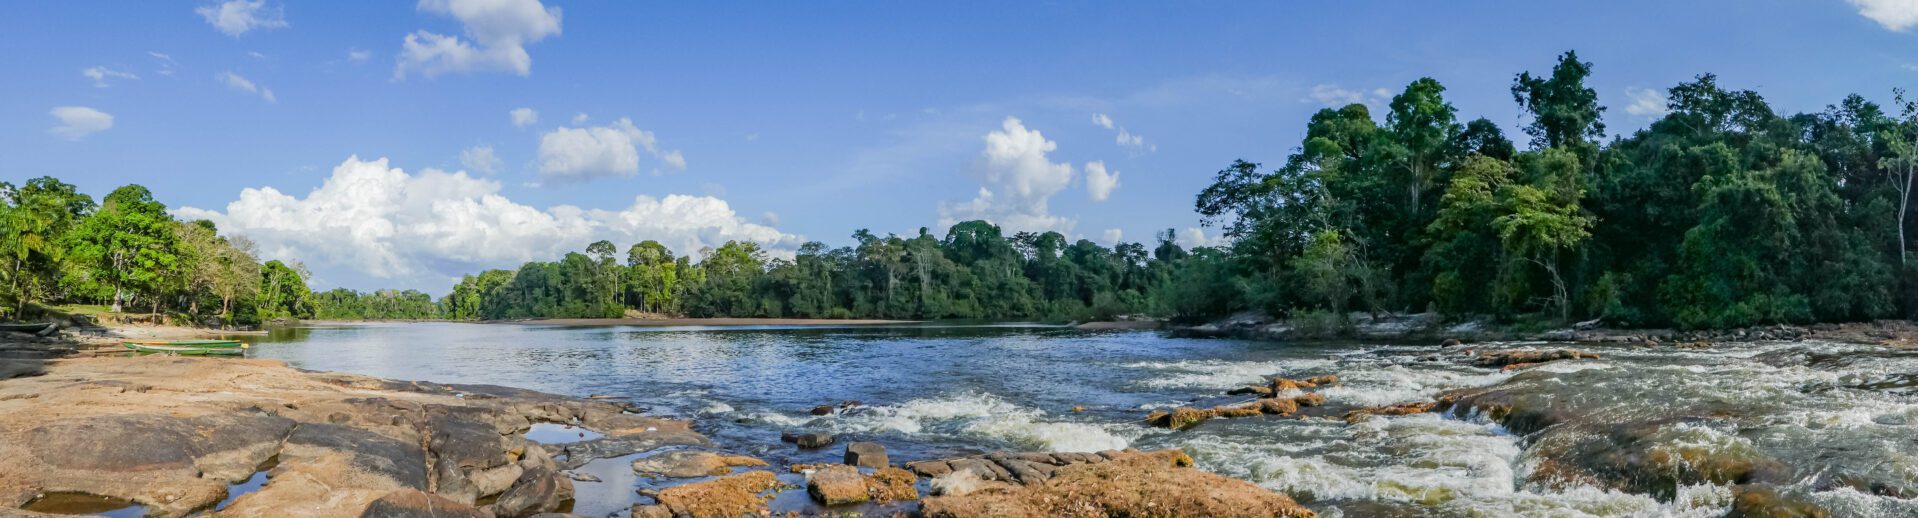 Suriname reisinformatie voor jouw vakantie